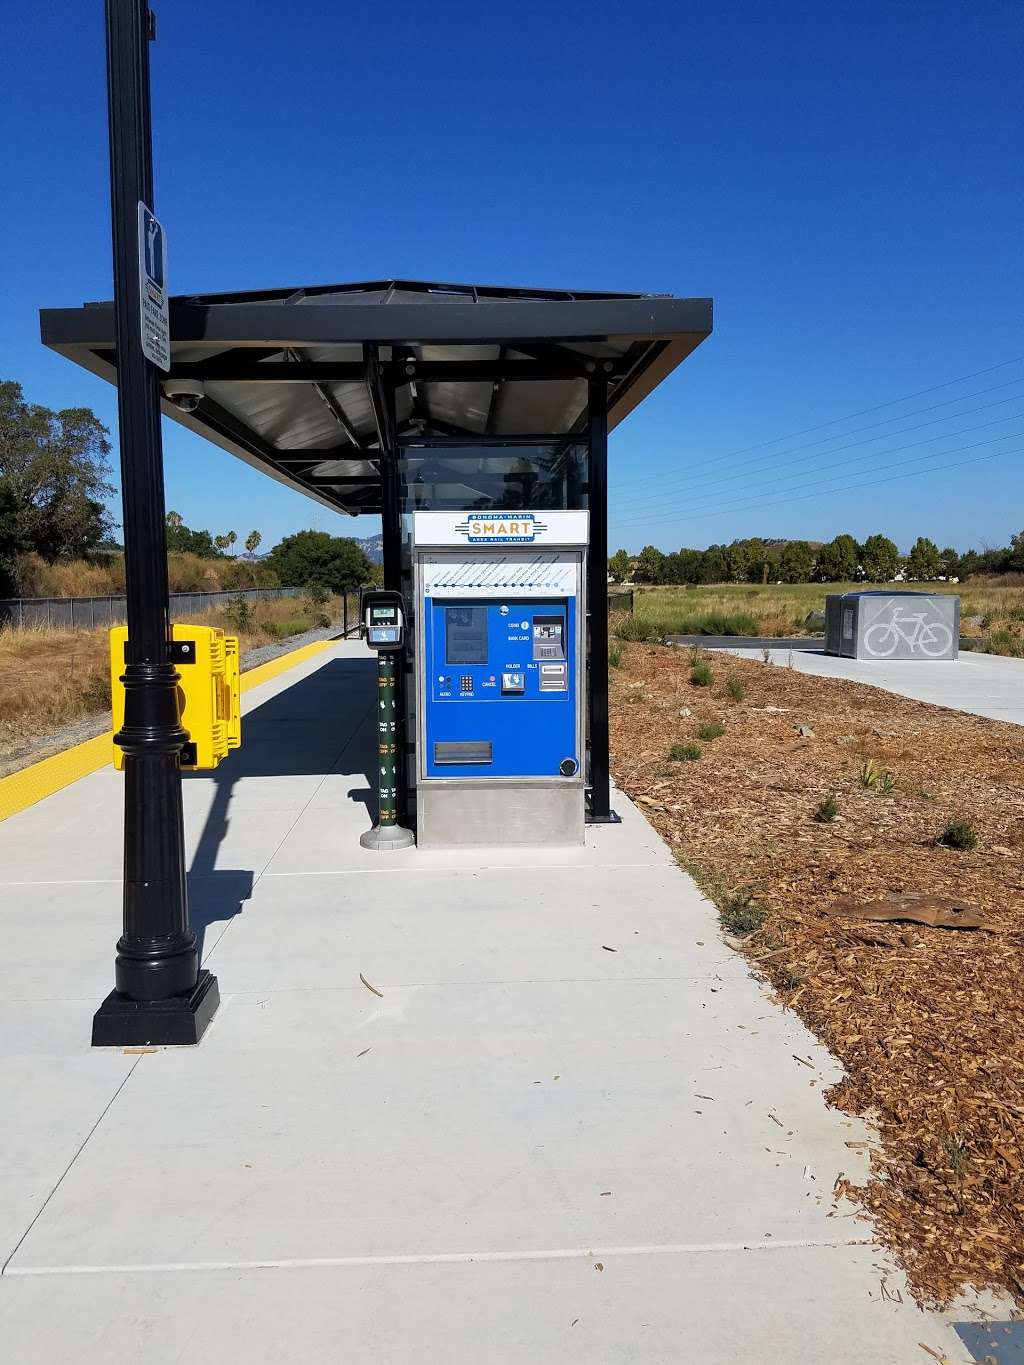 SMART Novato Hamilton Station | Main Gate Rd, Novato, CA 94949, USA